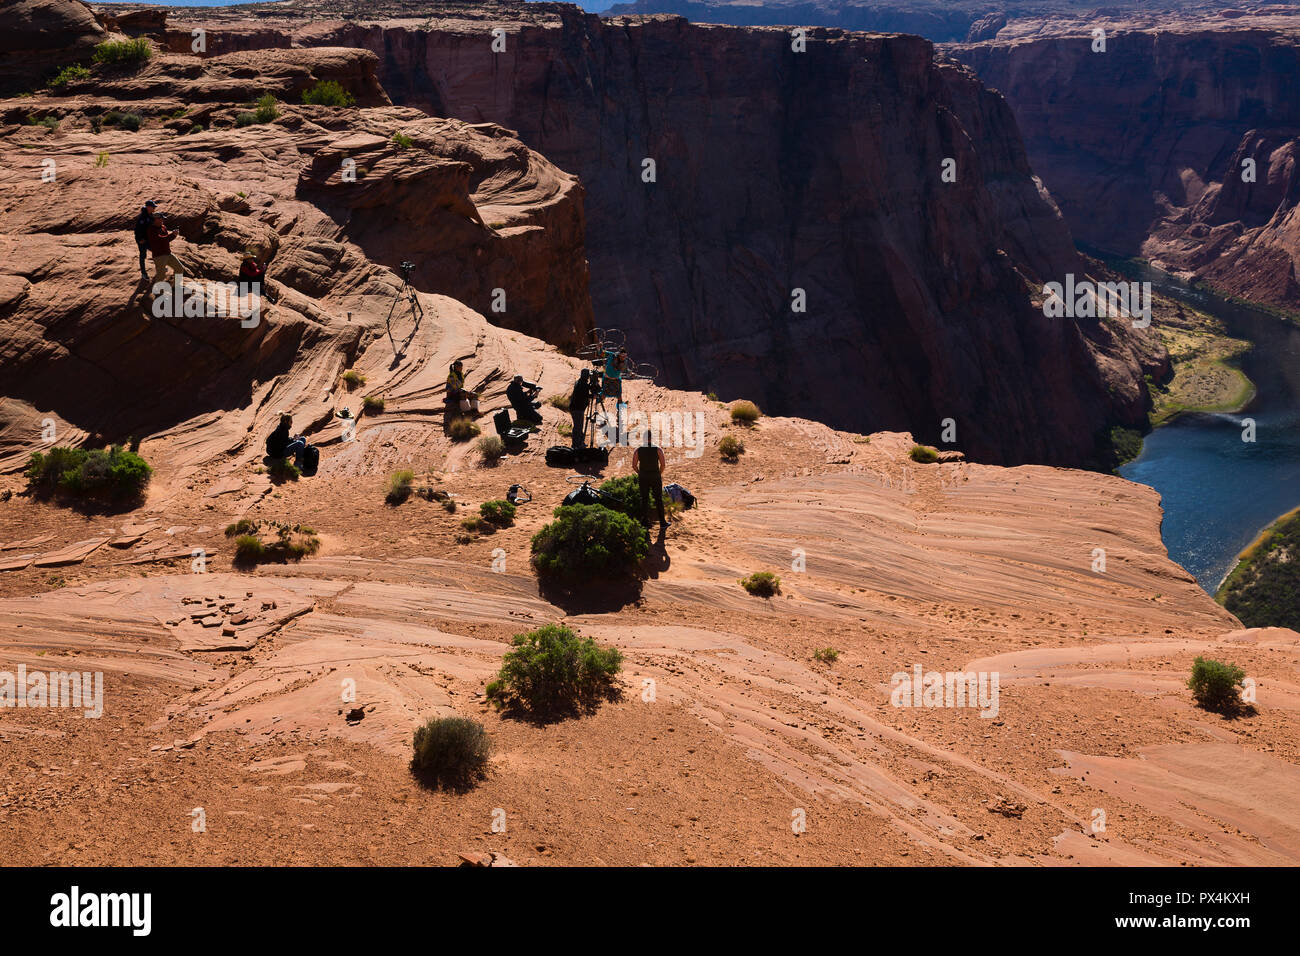 Horseshoe Bend. Film crew recording Navajo hoop dancing demonstration. Stock Photo